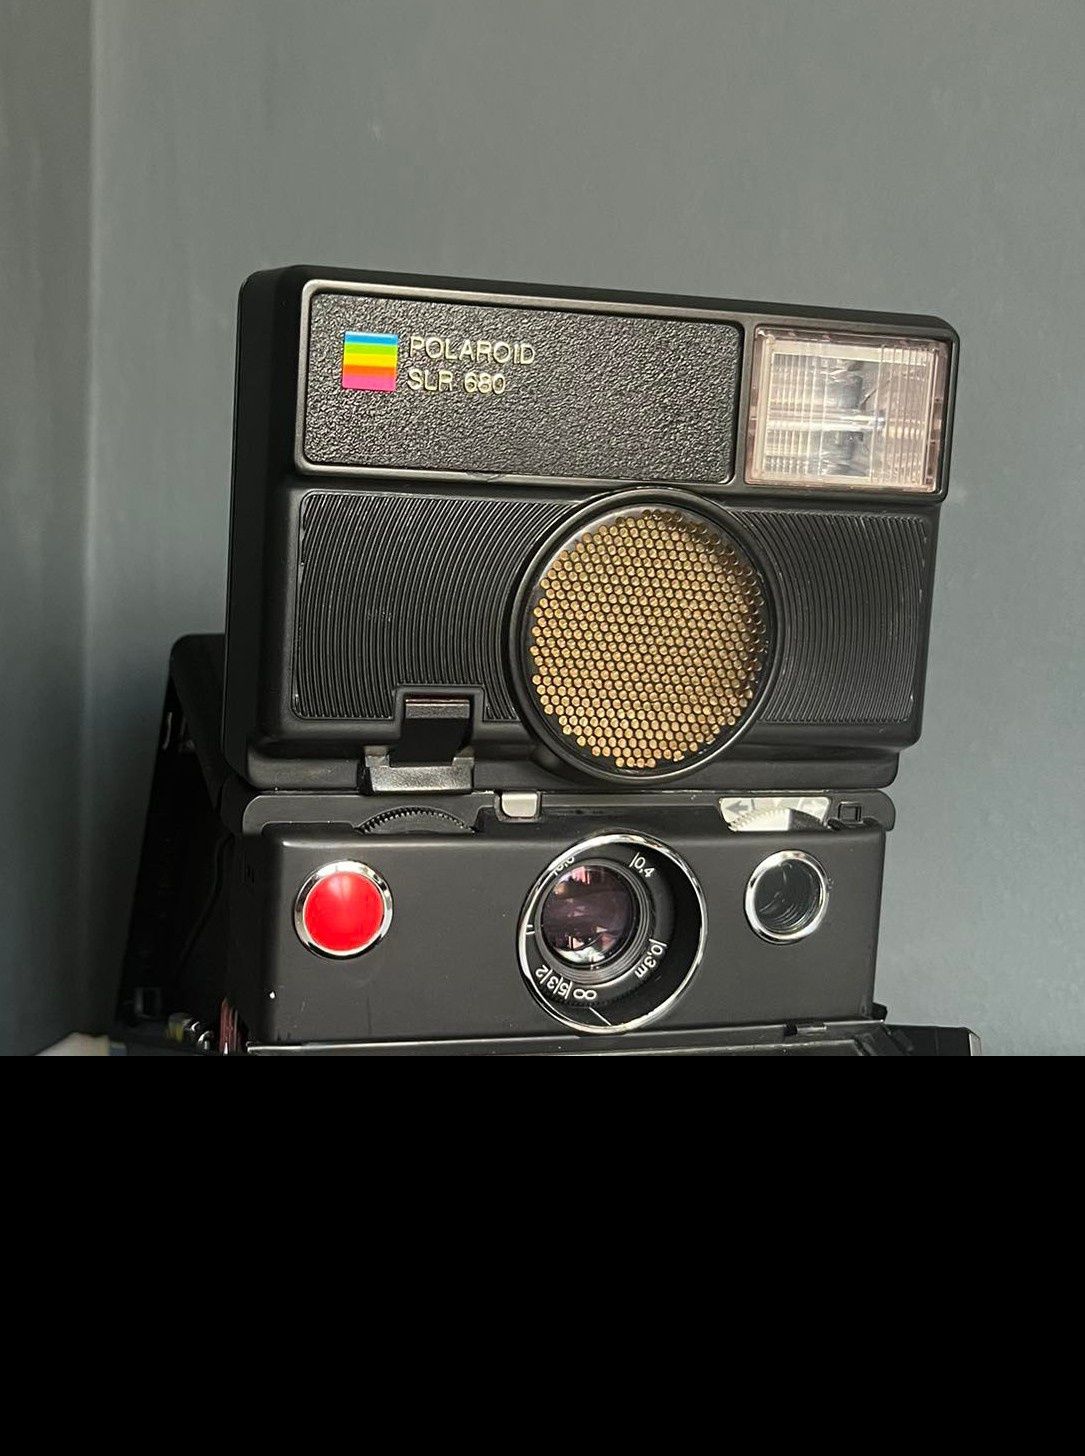 Polaroid slr680 lustrzanka na 600